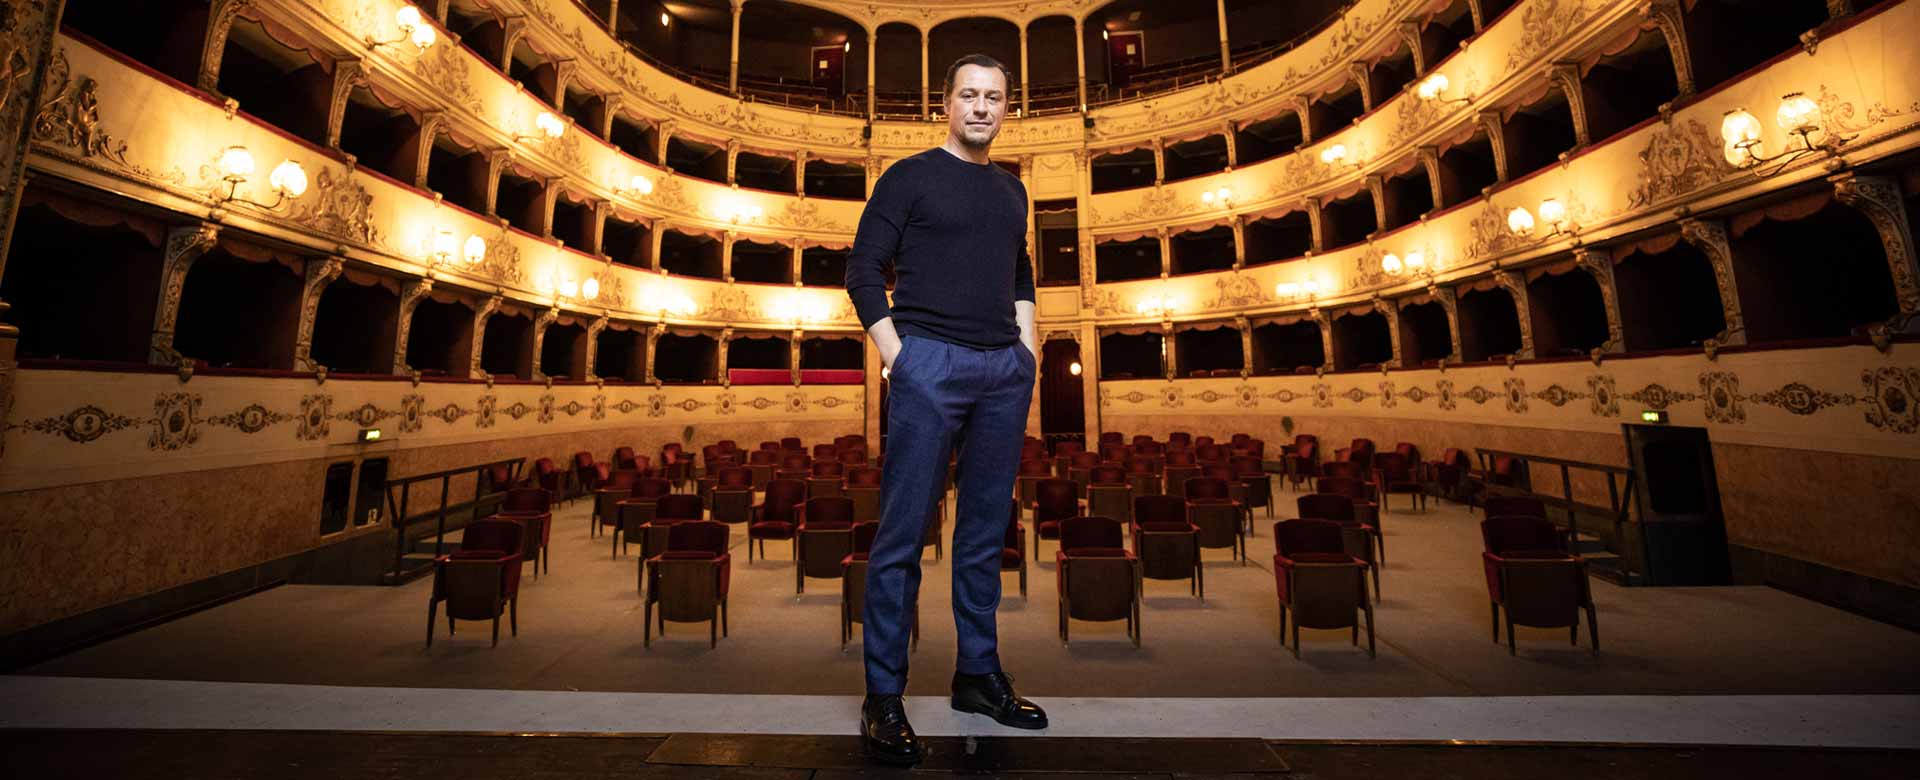 Stefano Accorsi sul palcoscenico del Teatro della Pergola di Firenze